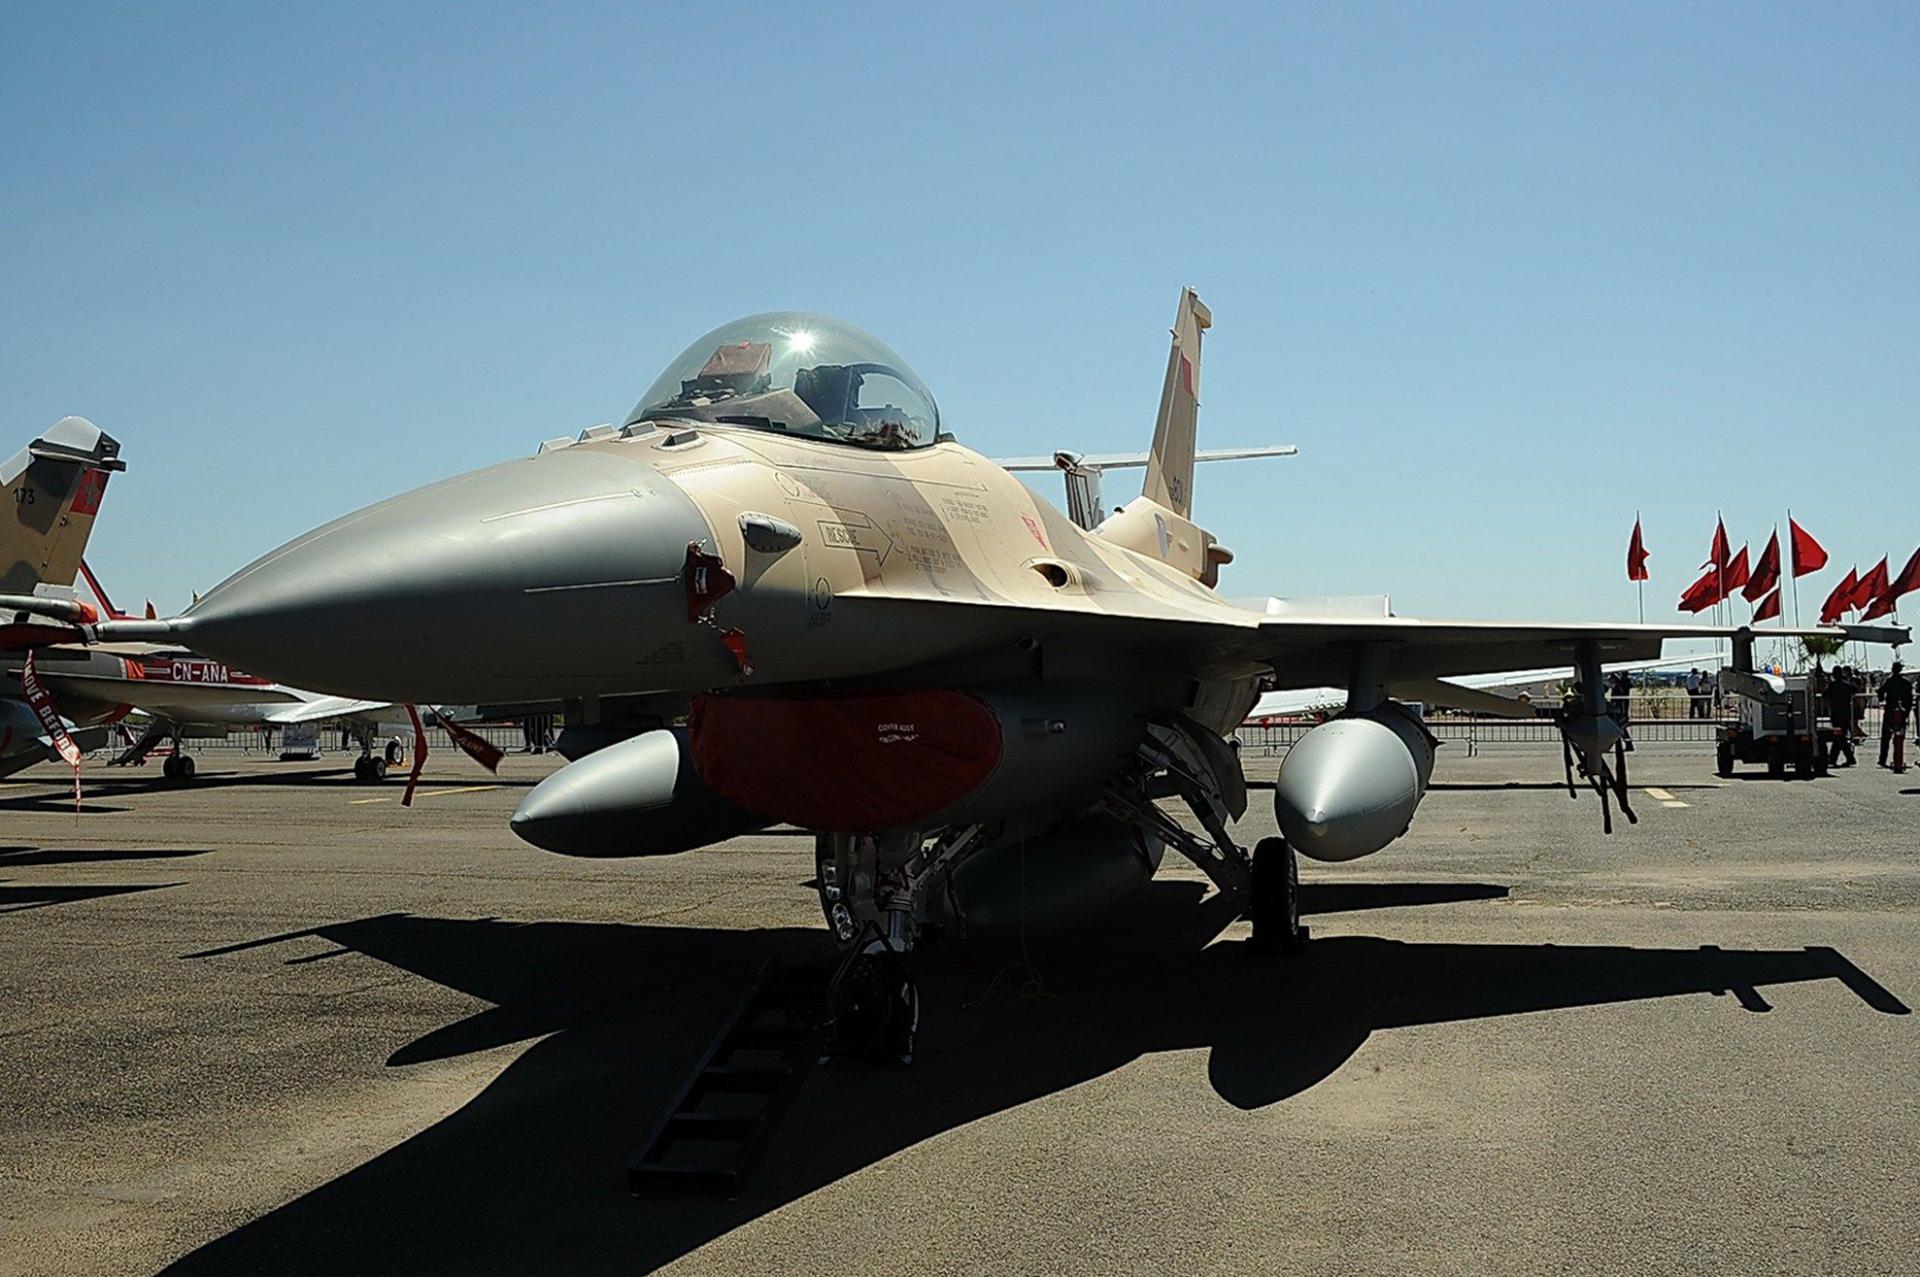 خطة لتأهيل مقاتلات اف 16 المغربية محليا